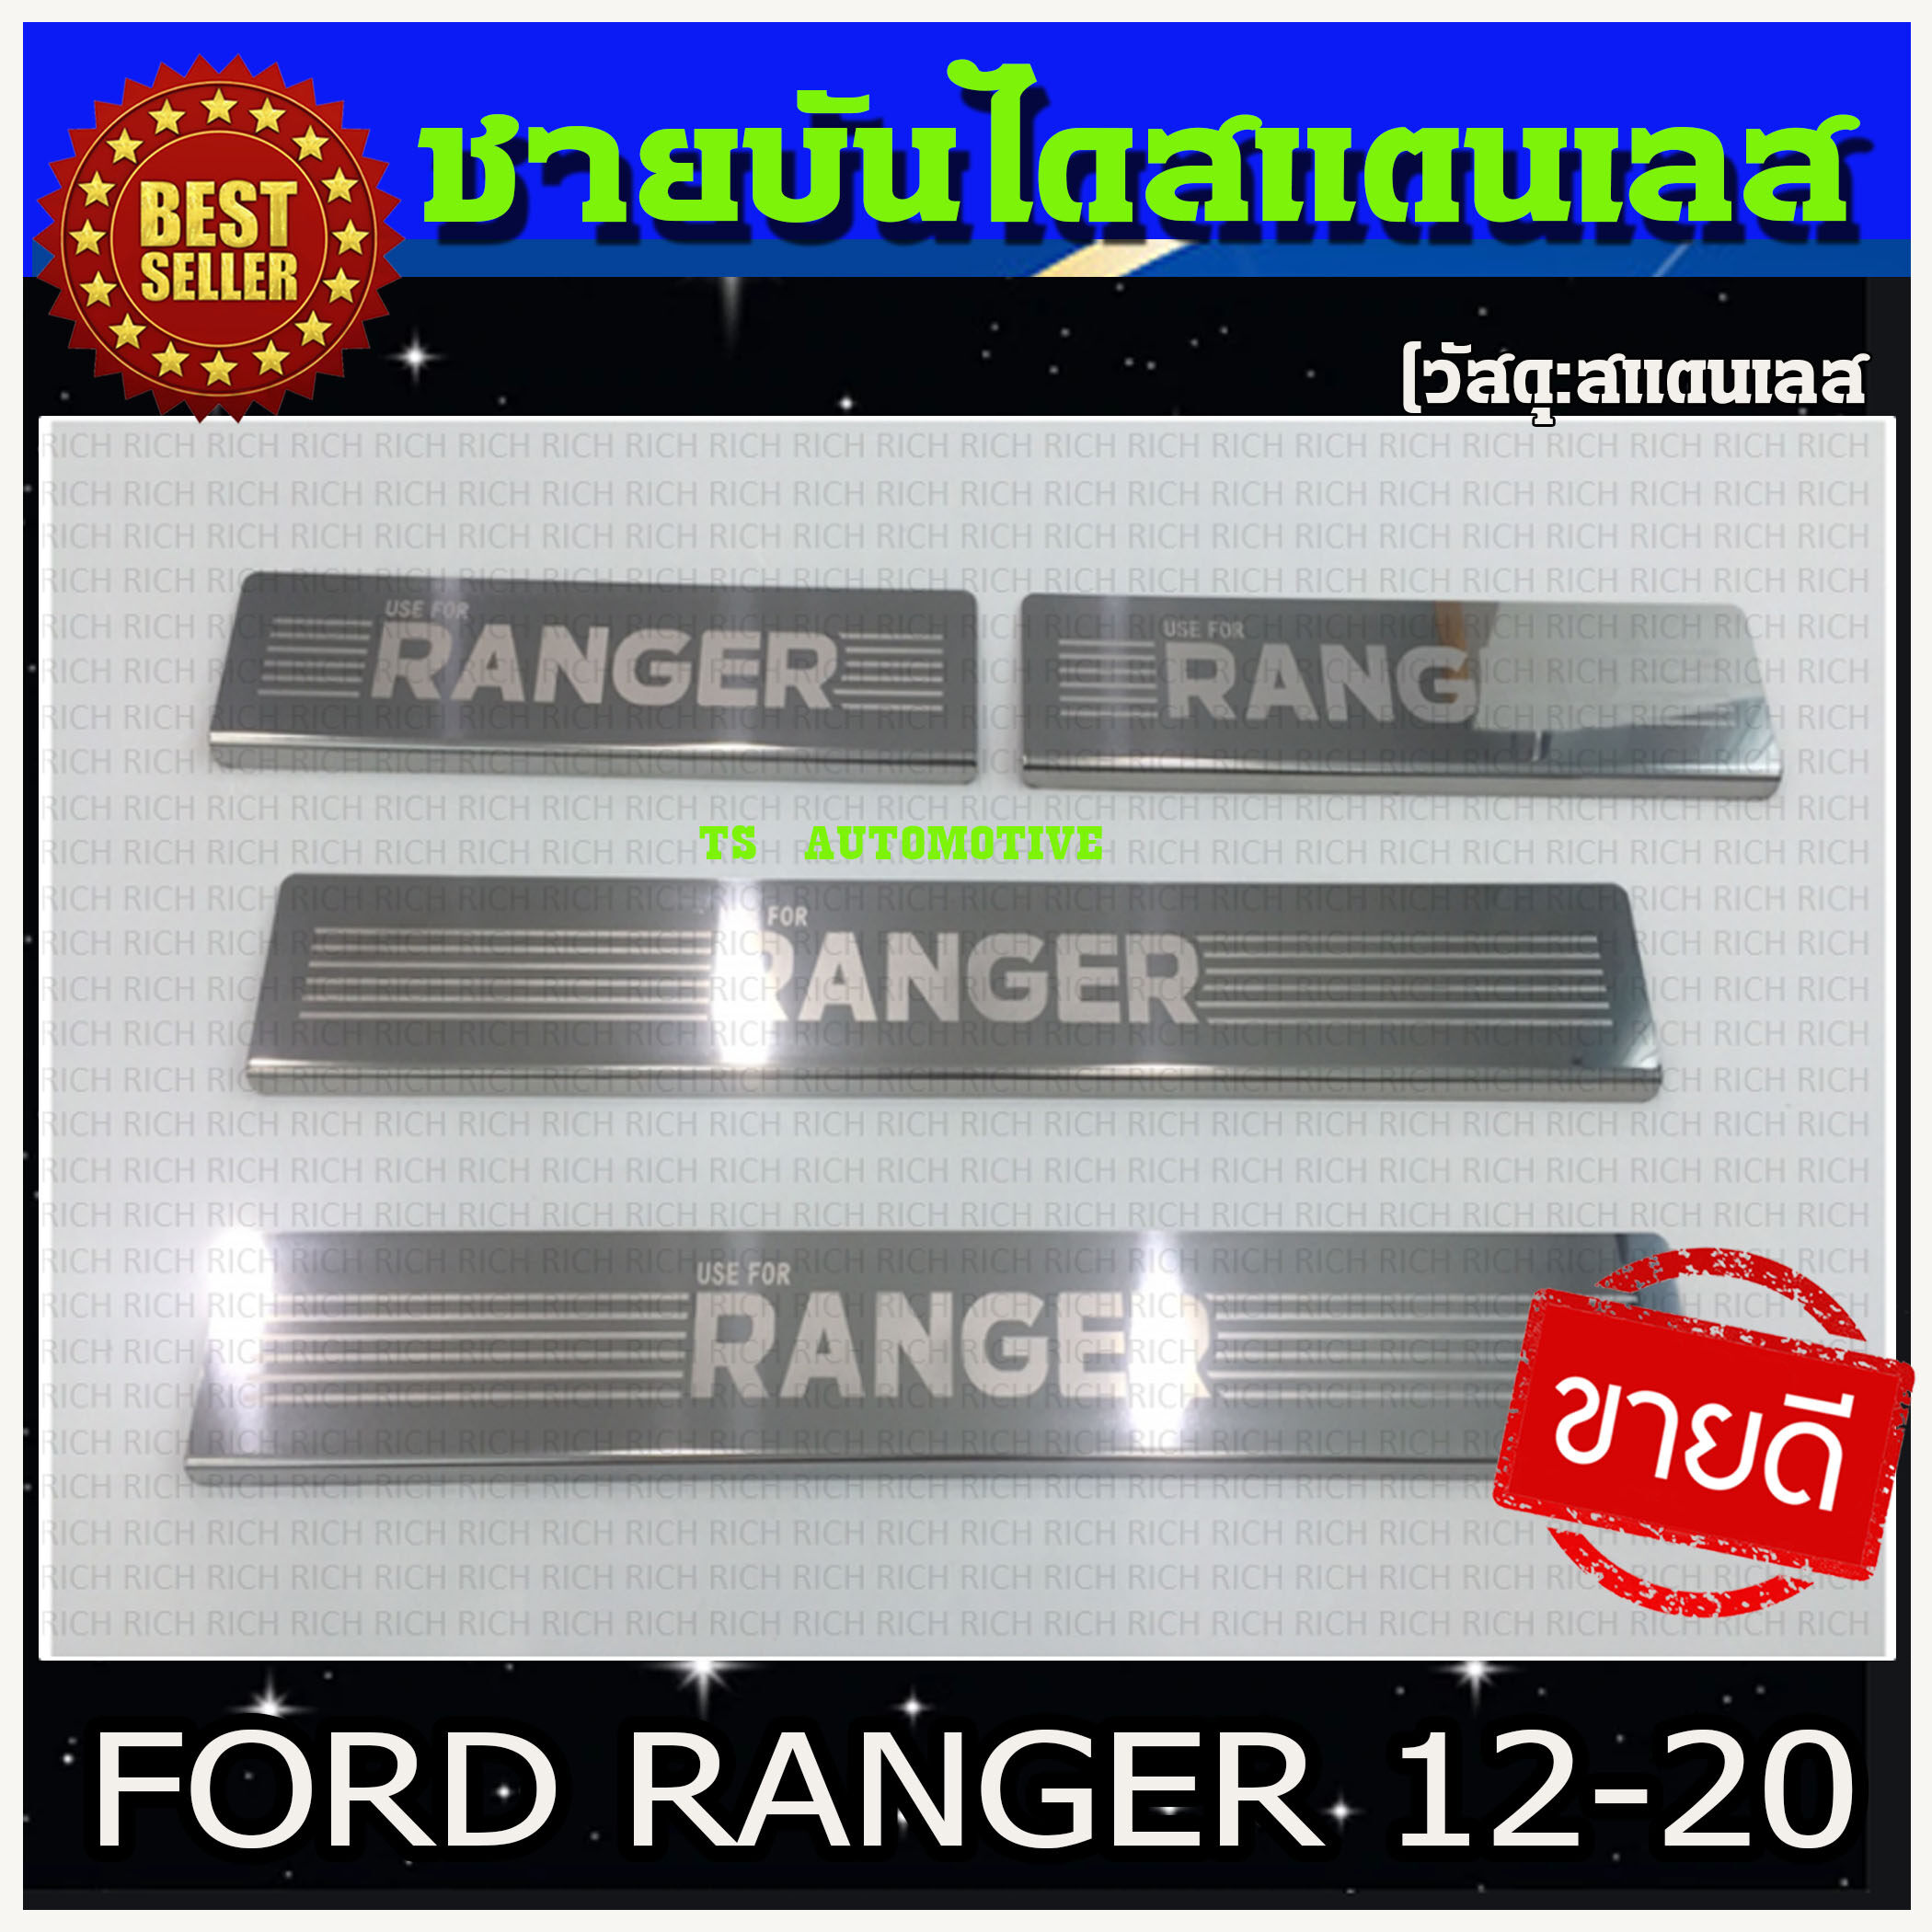 ชายบันไดสแตนเลส 4 ประตู Ford Ranger 2012-2020 (RICH) (RI)